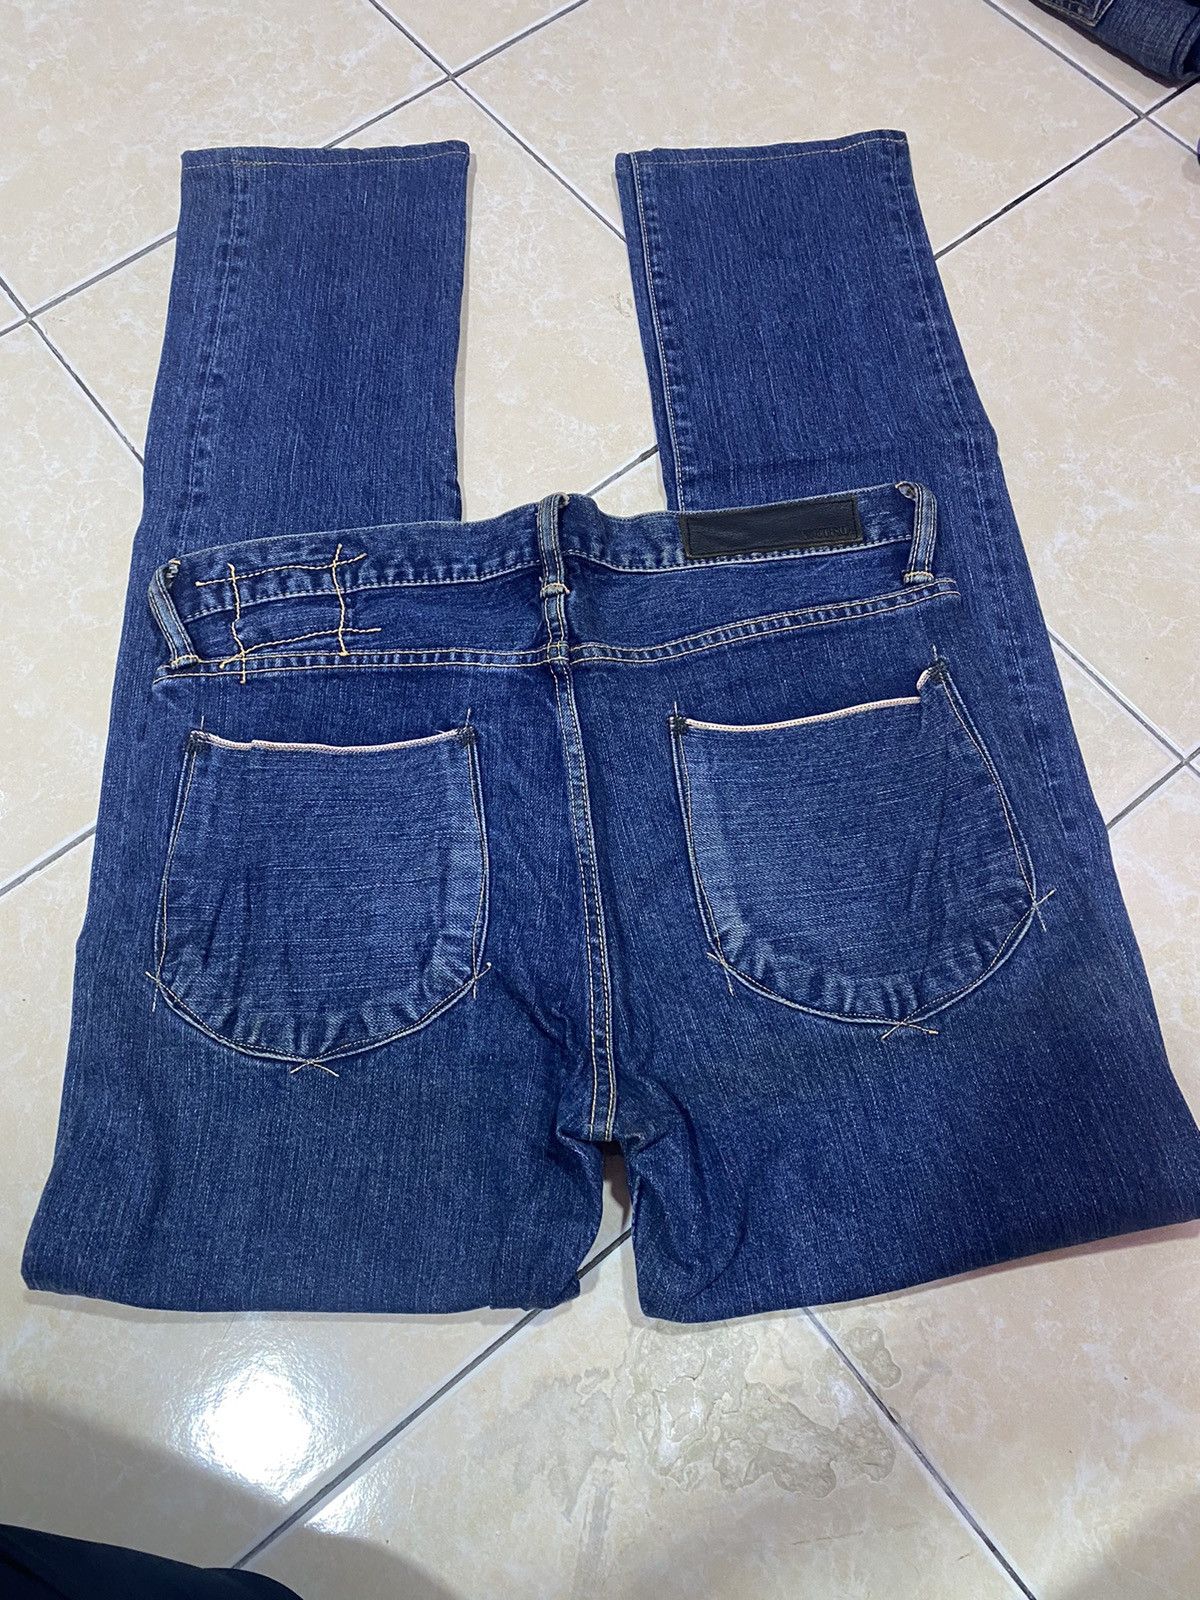 KURO Diamante Japanese Selvedge Denim Jeans - 5